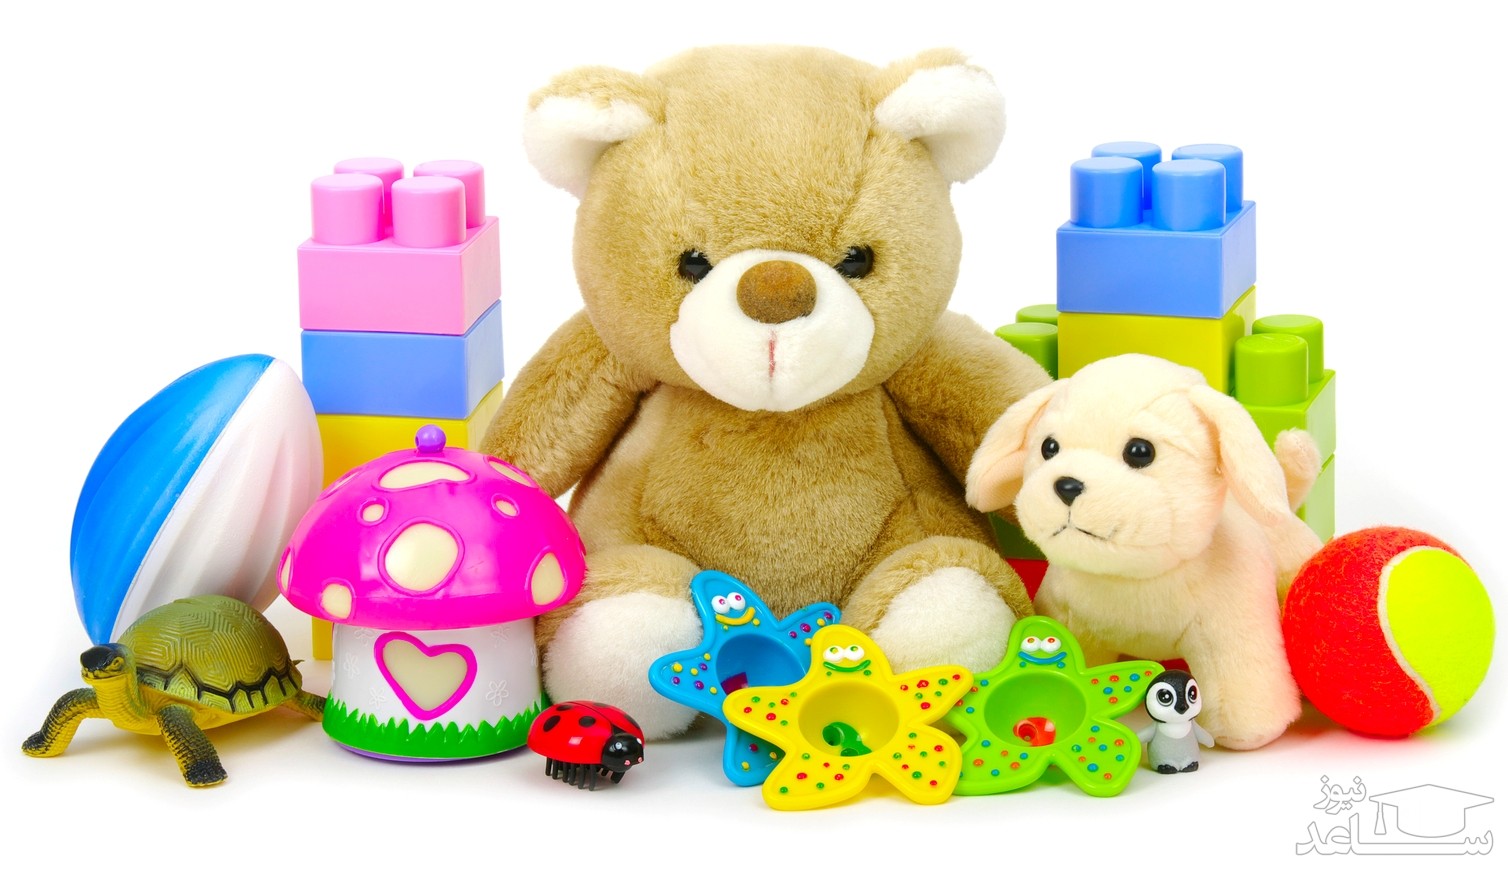 اسباب بازی های مفید و مضر برای کودکان در سنین مختلف